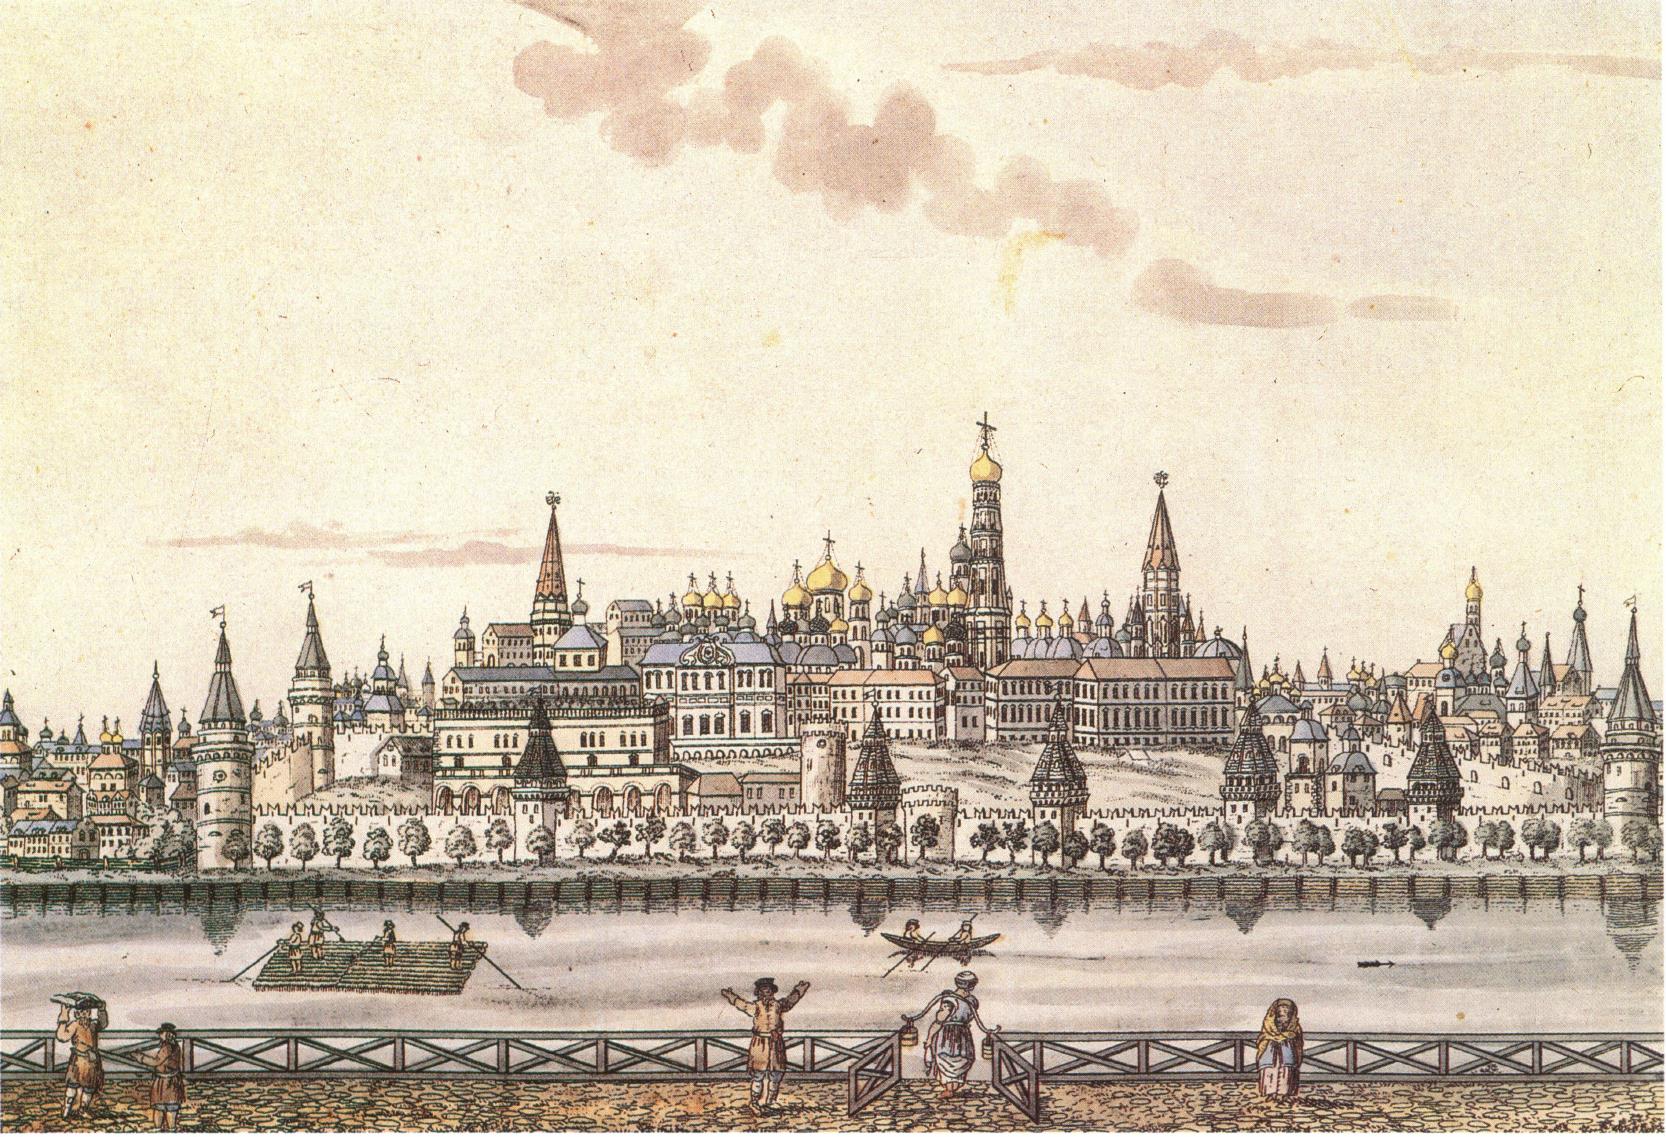 Московский Кремль 1800